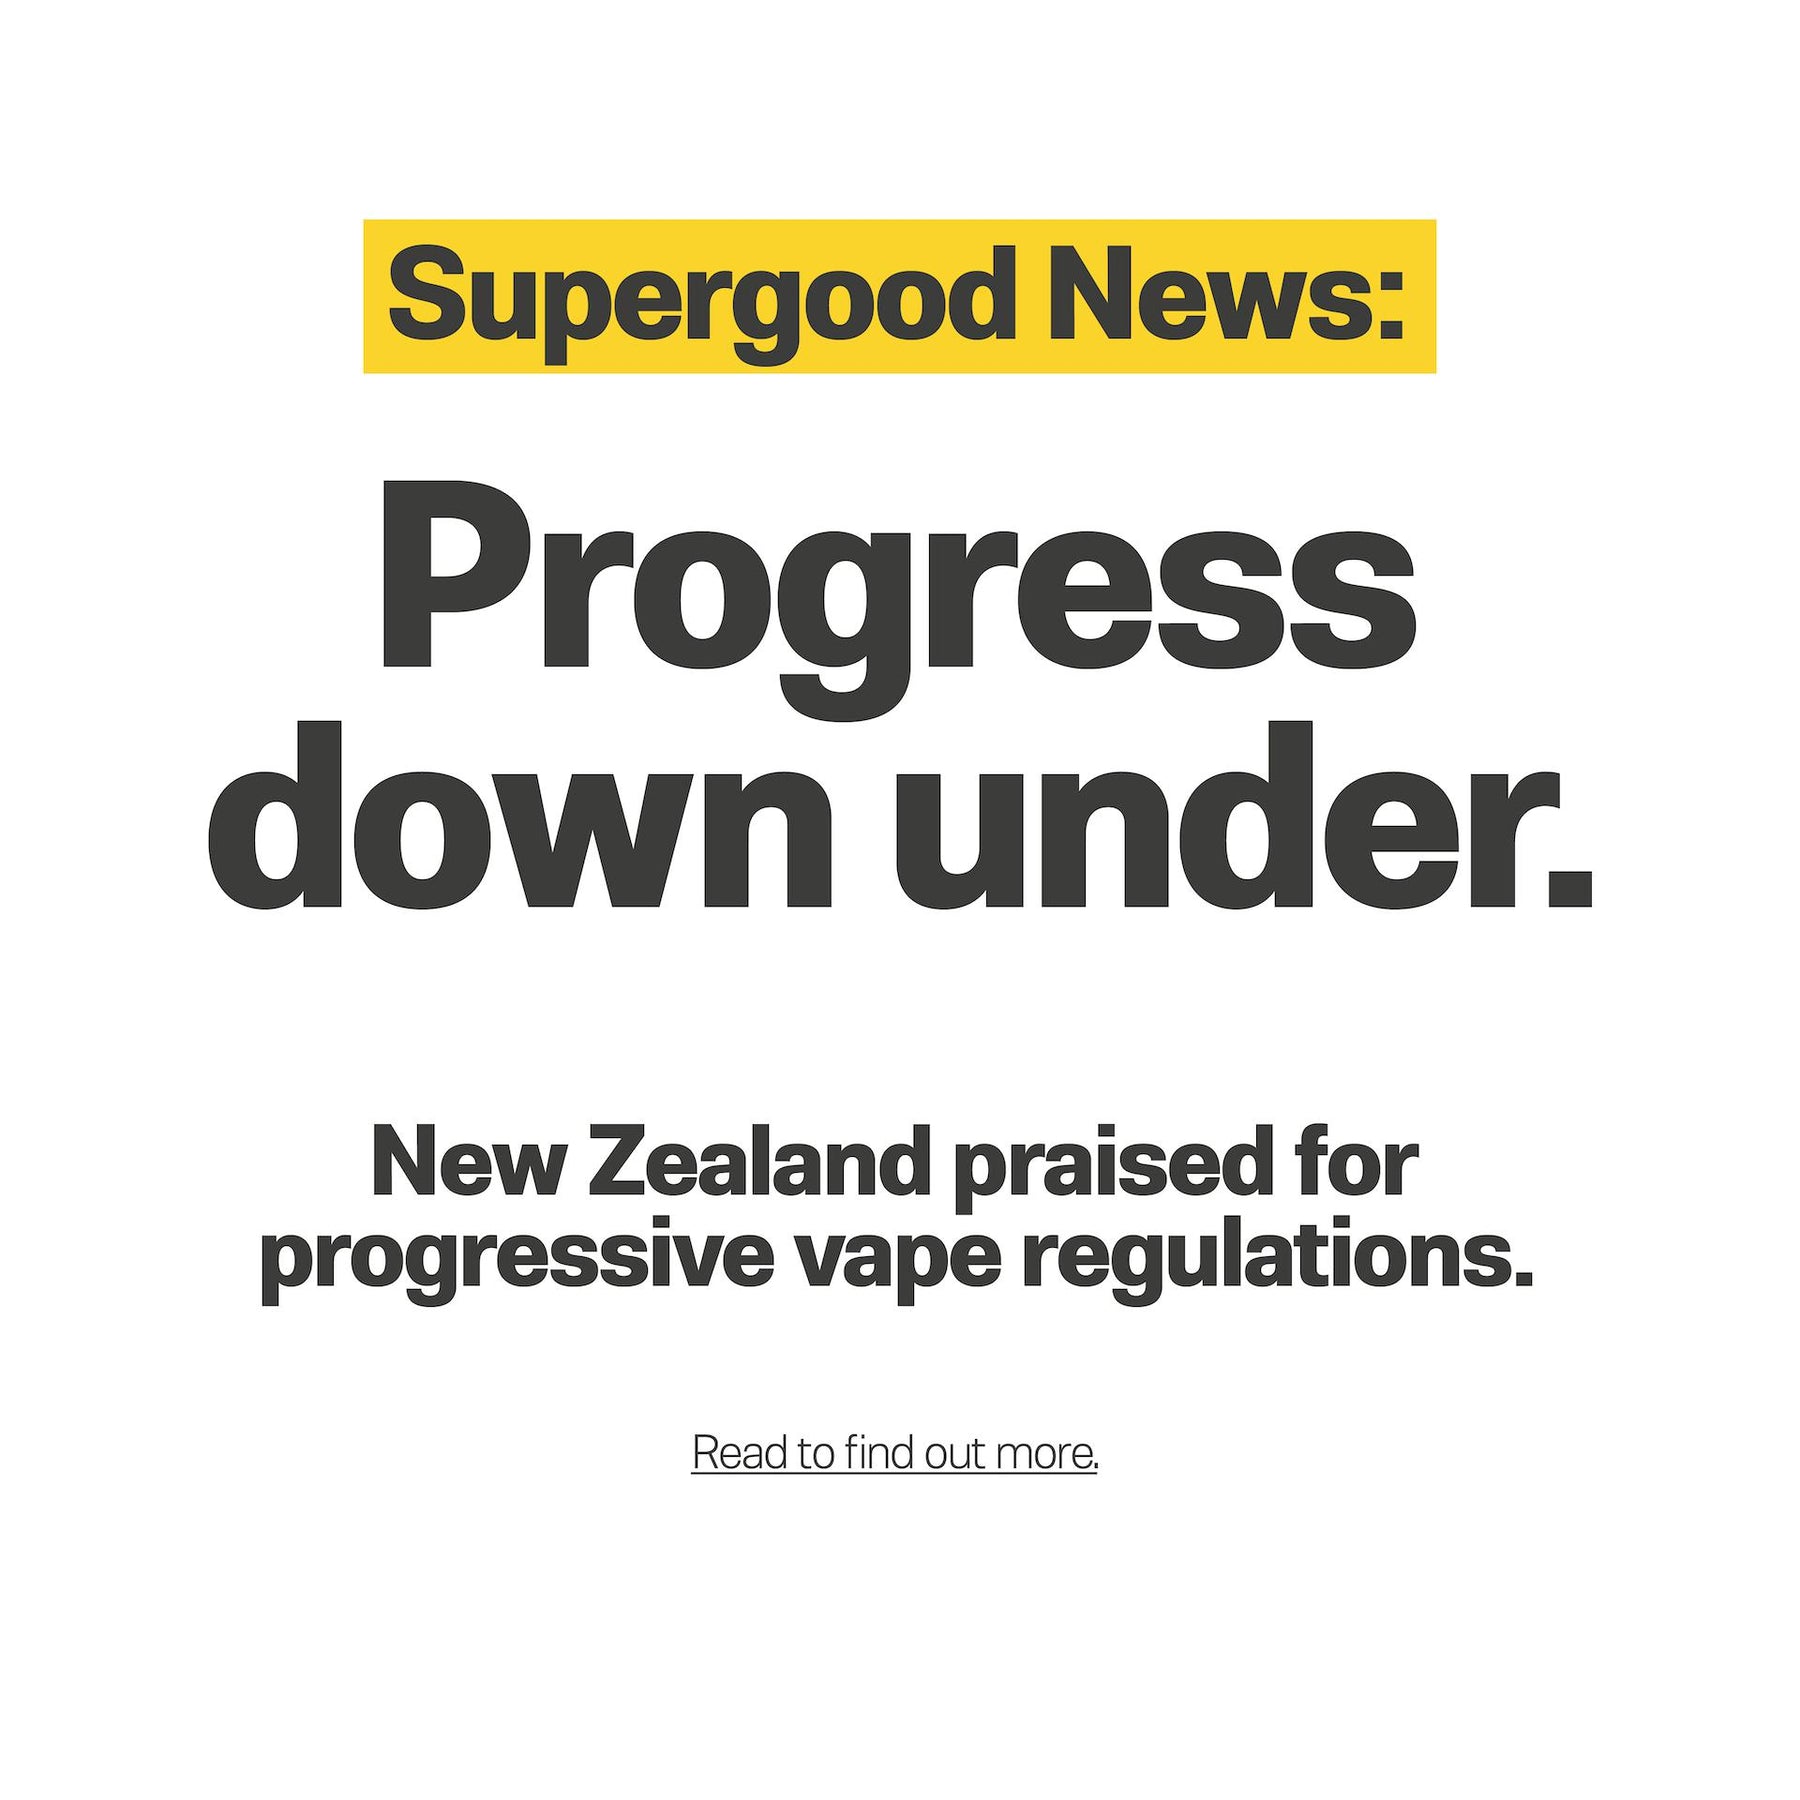 New Zealand praised for progressive vape regulations.